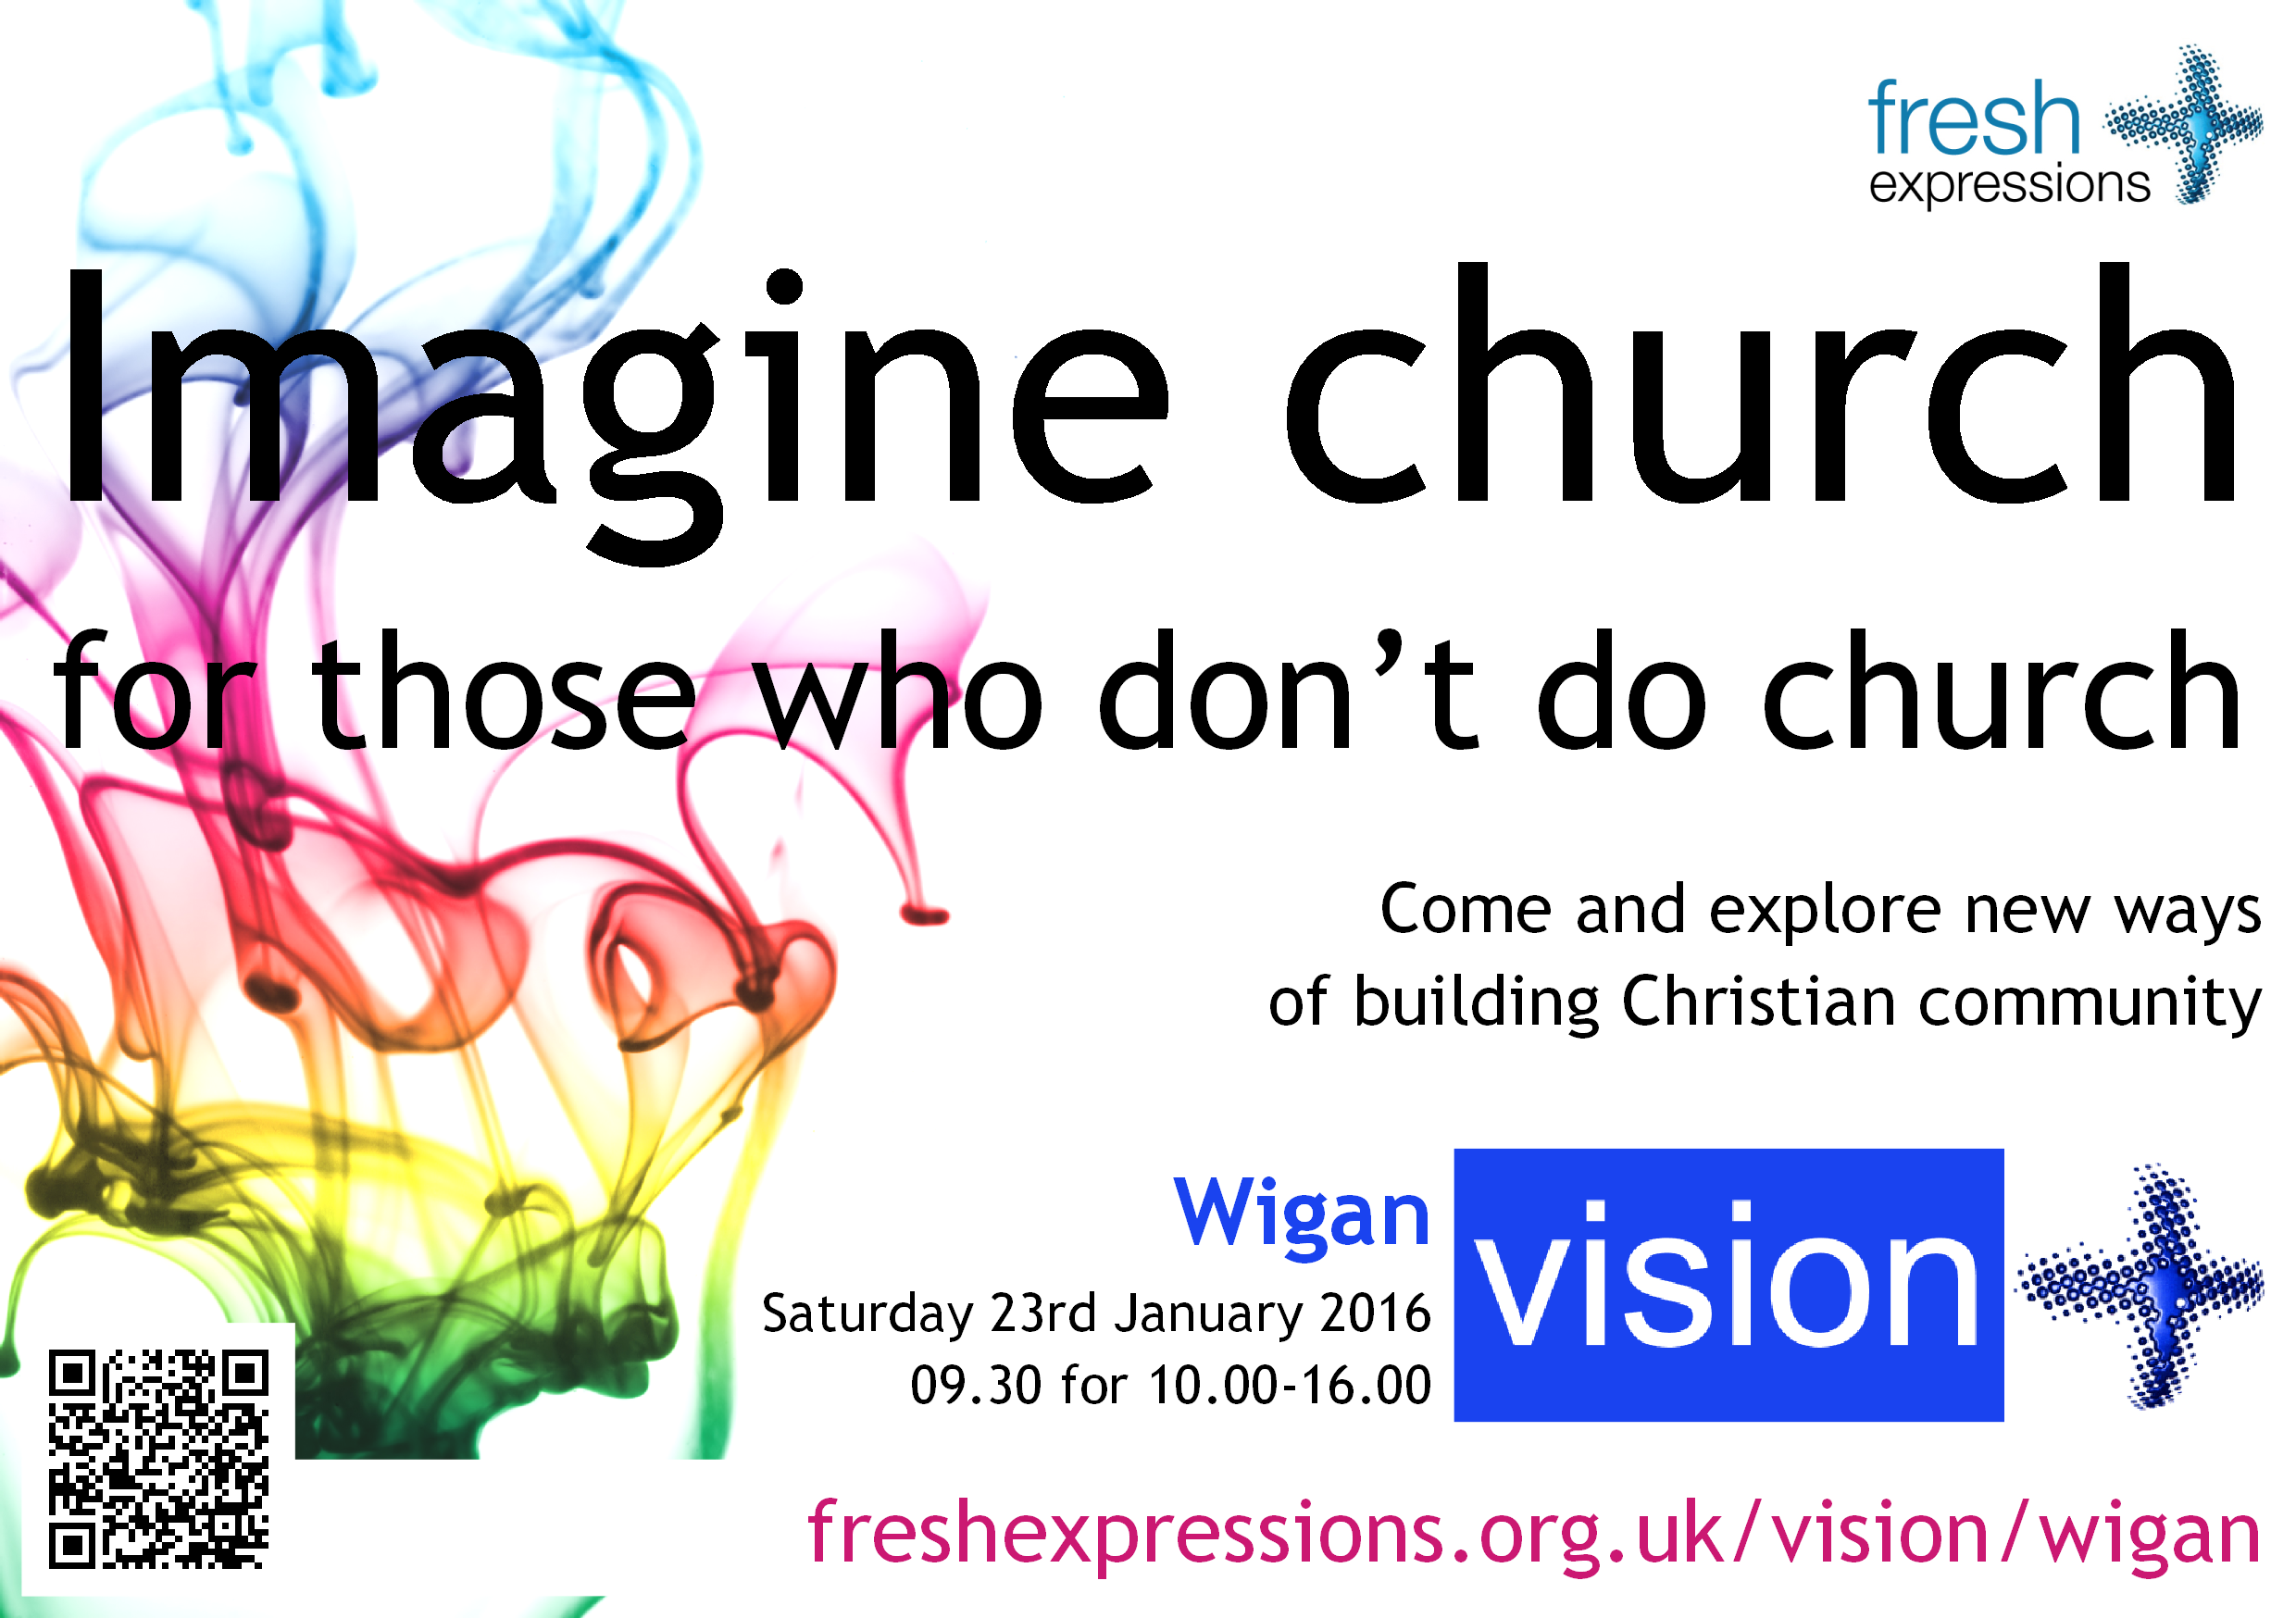 Wigan vision event